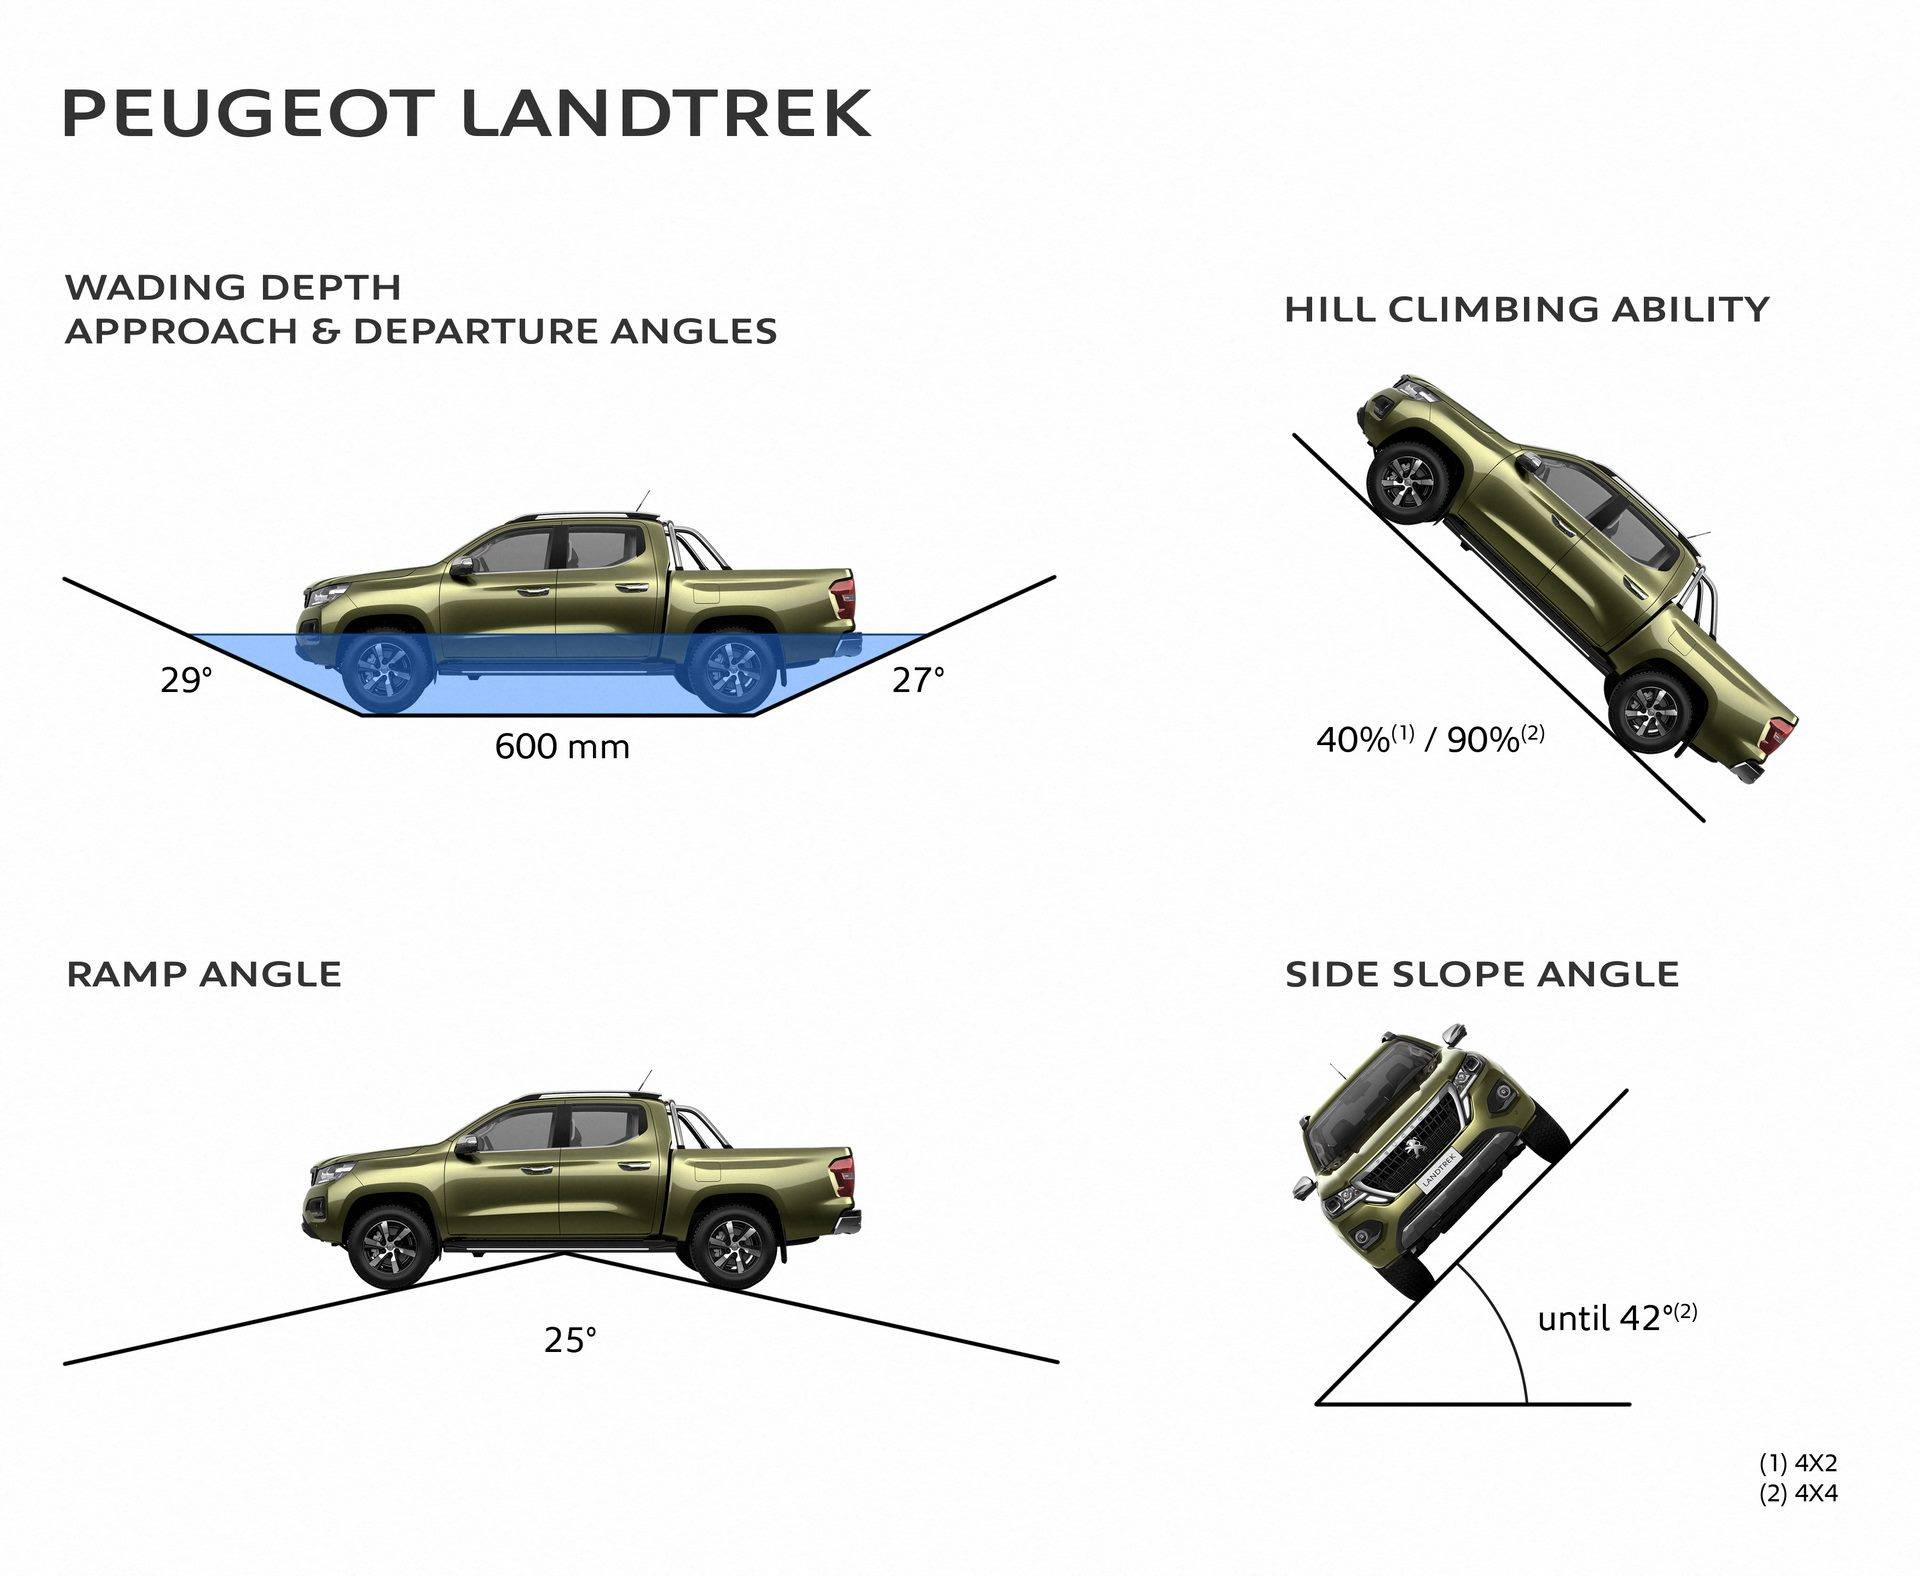 Peugeot презентовал новый пикап Landtrek